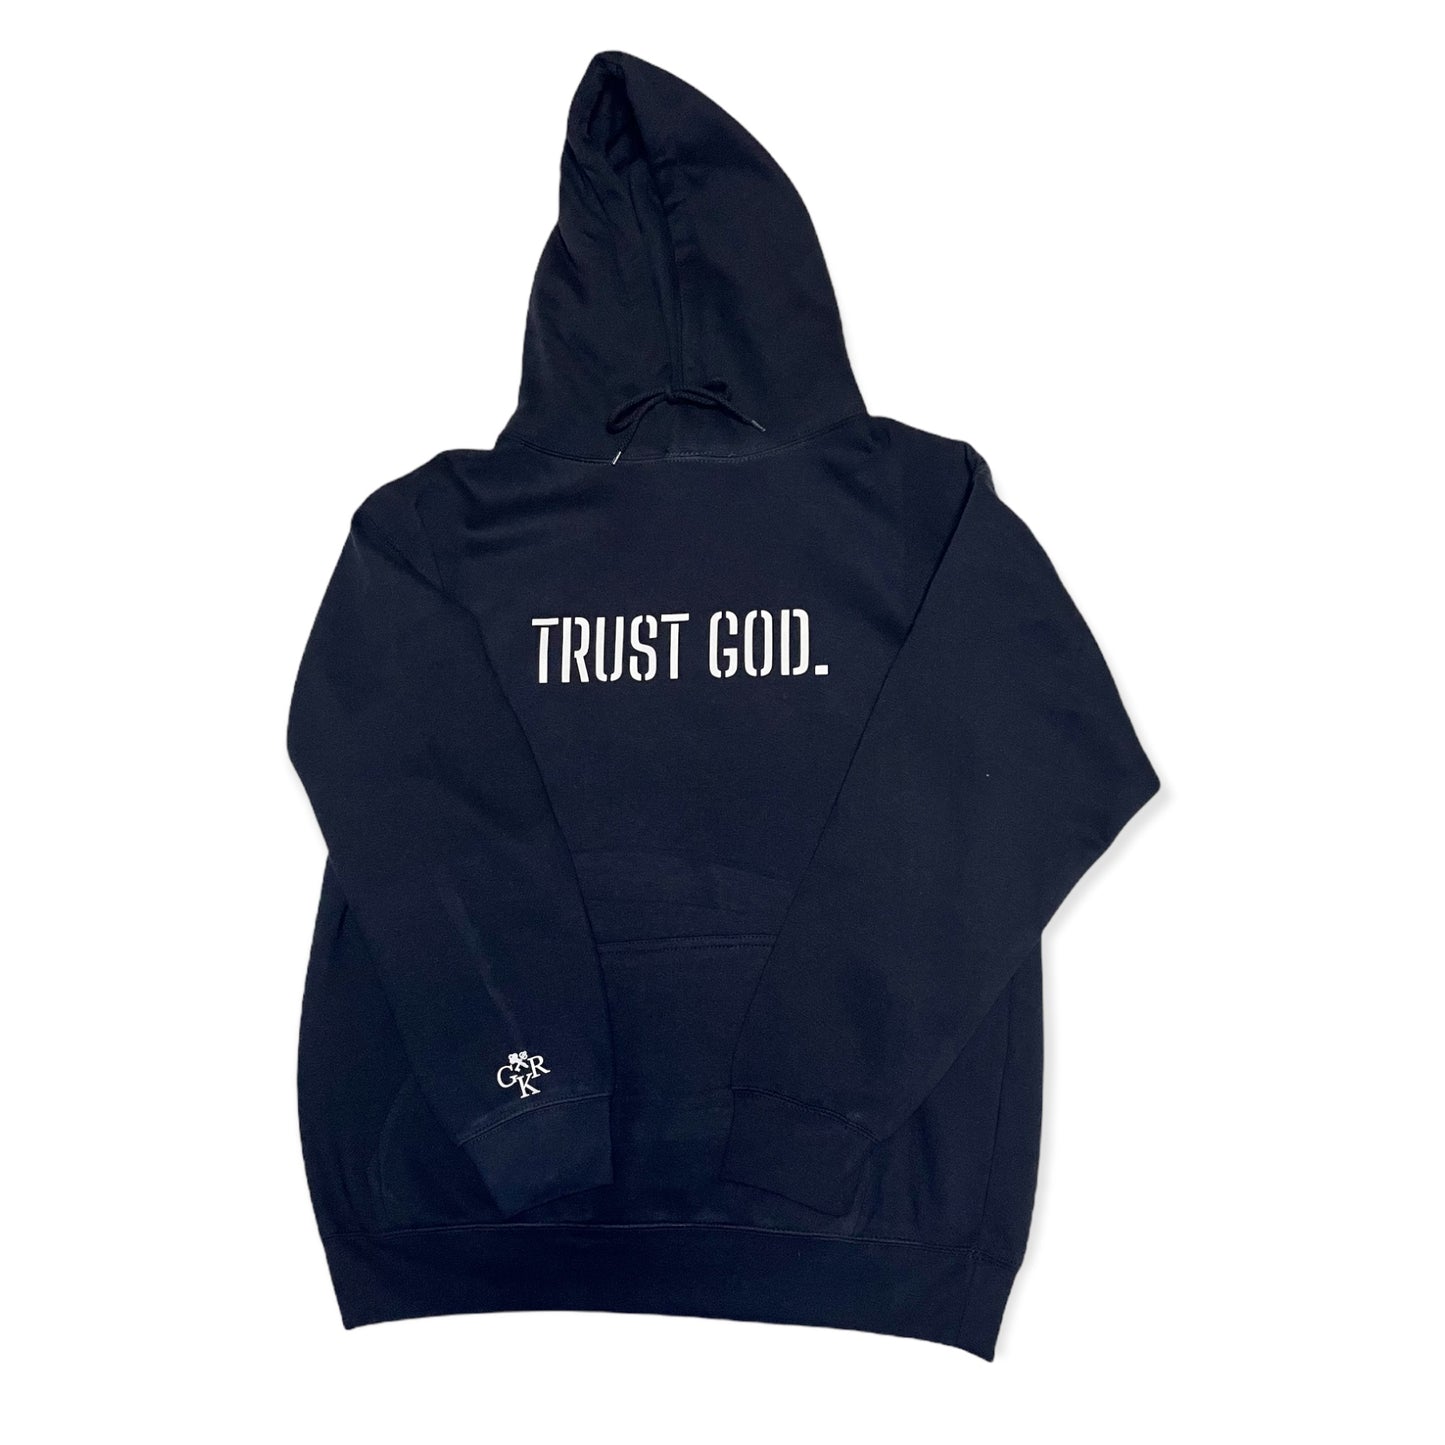 Trust God. Unisex Premium Hoodie